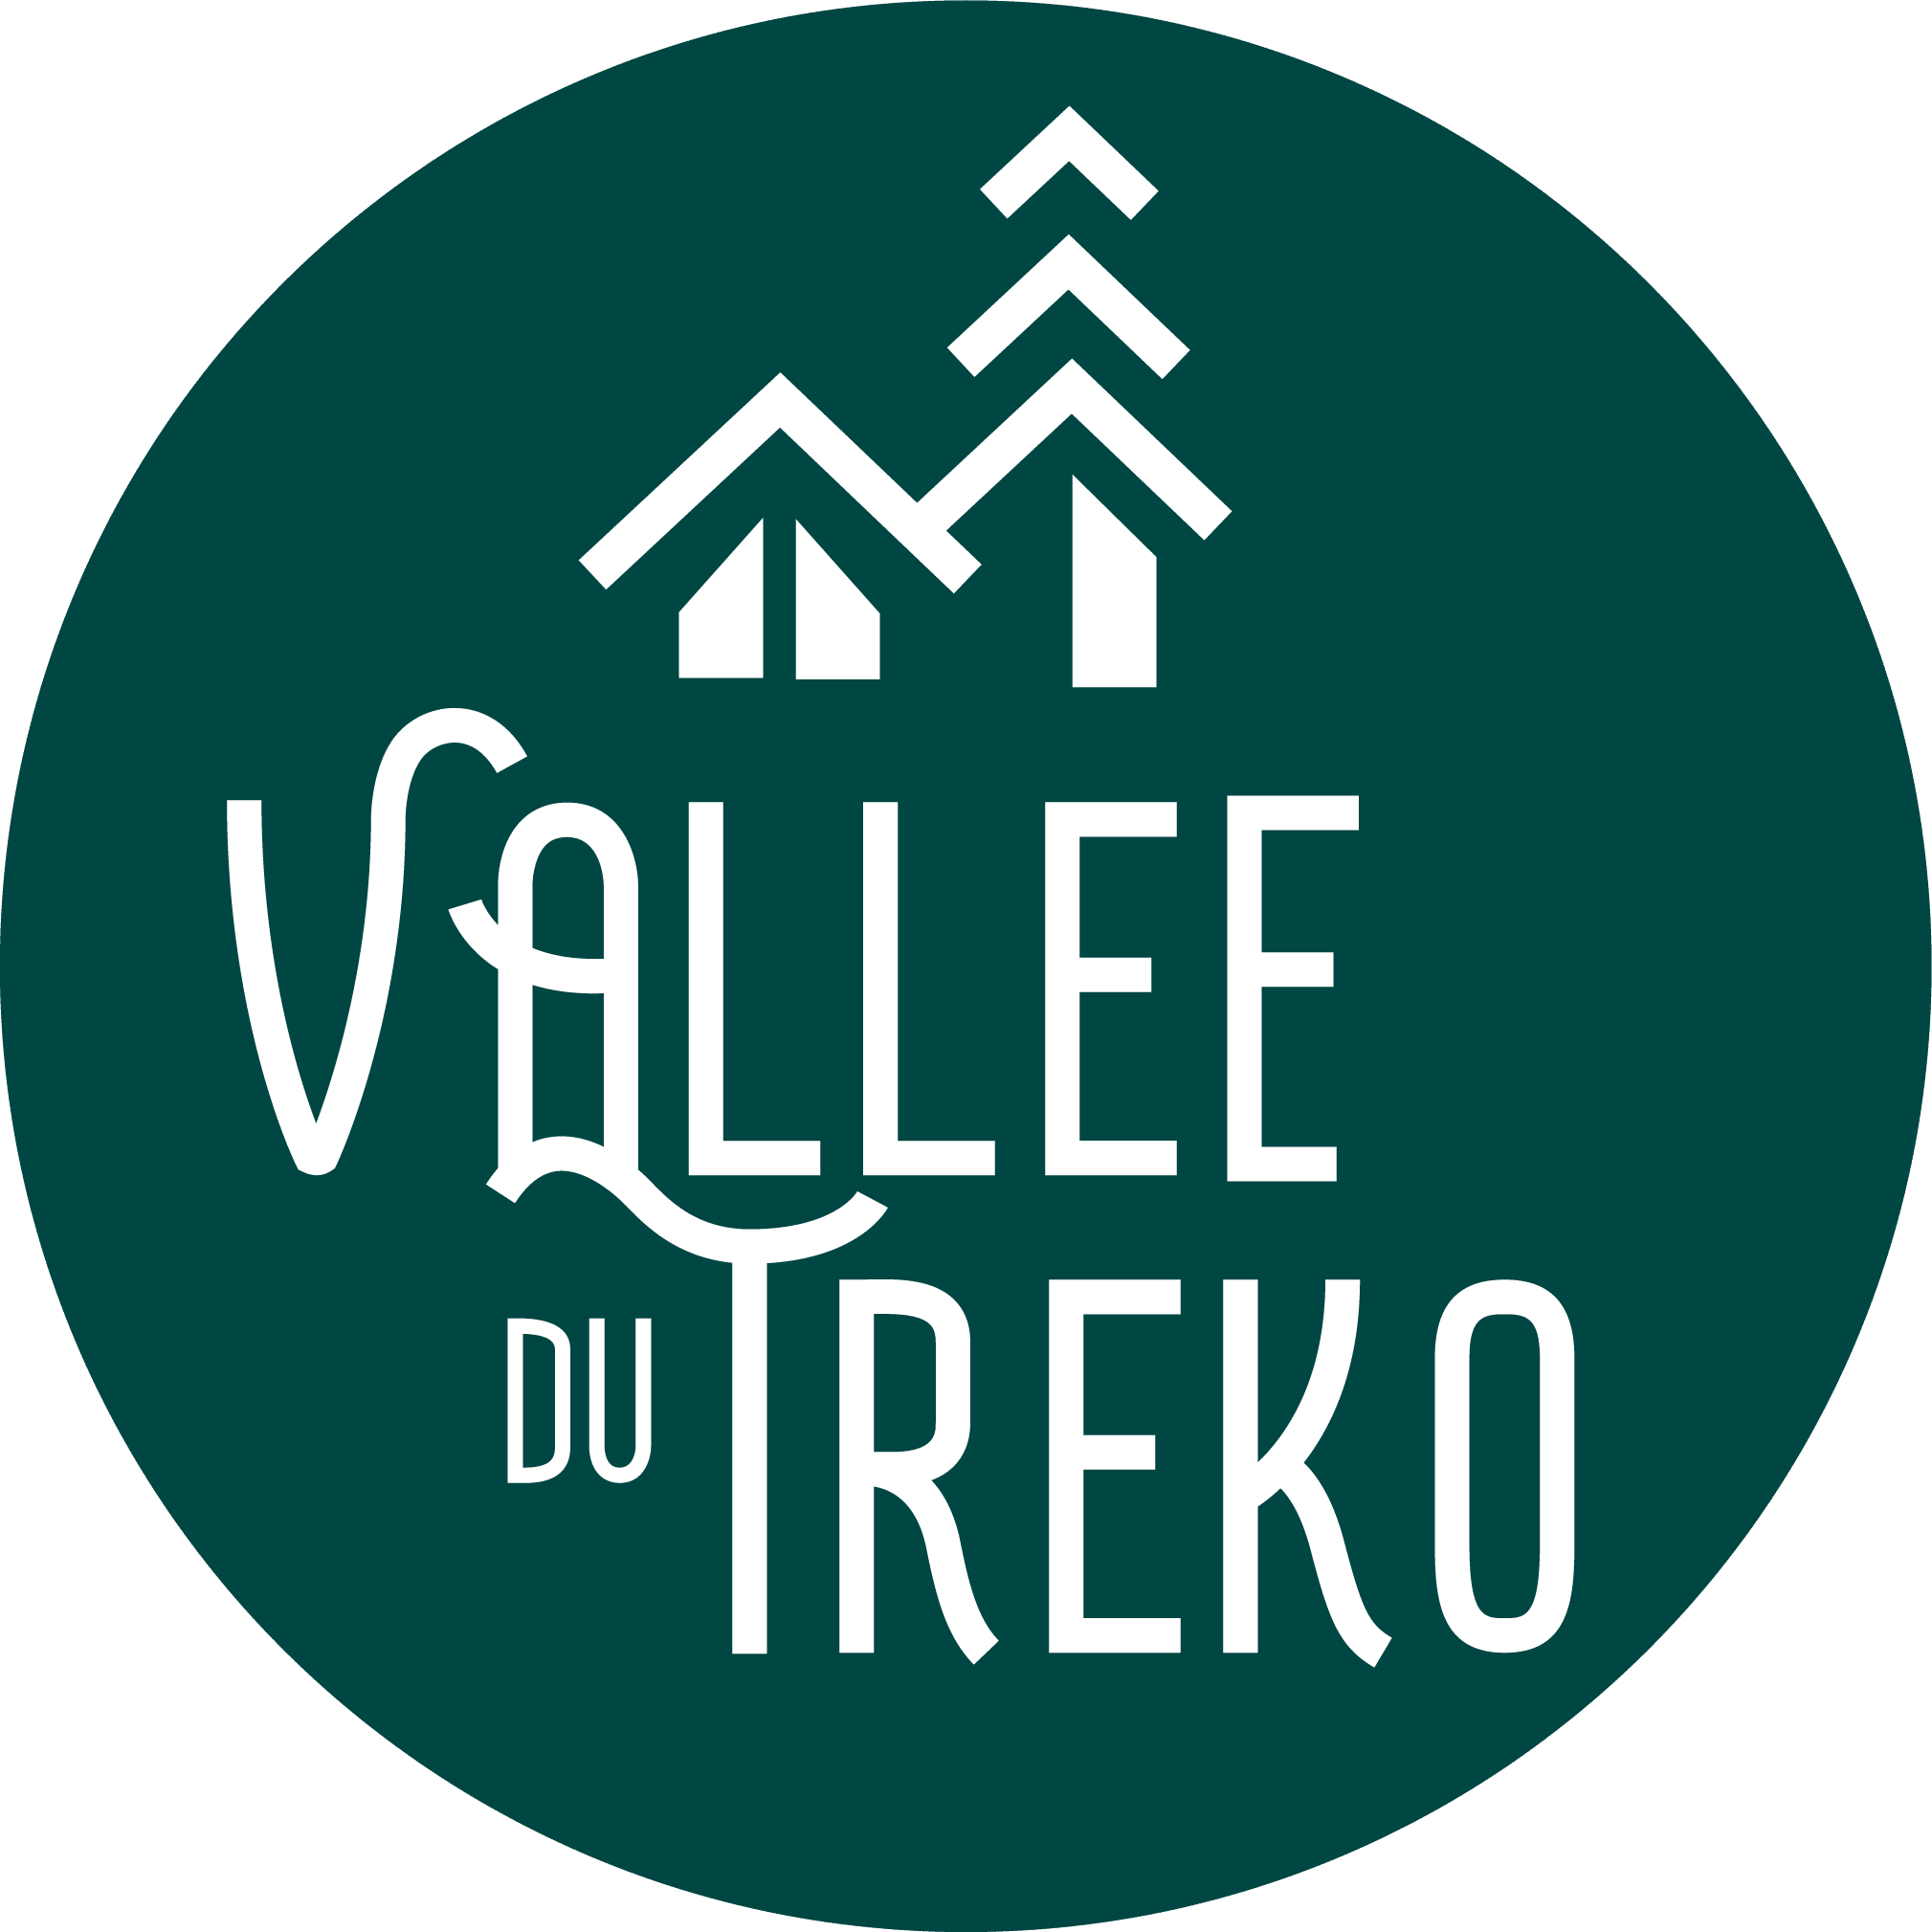 Vallée du Treko